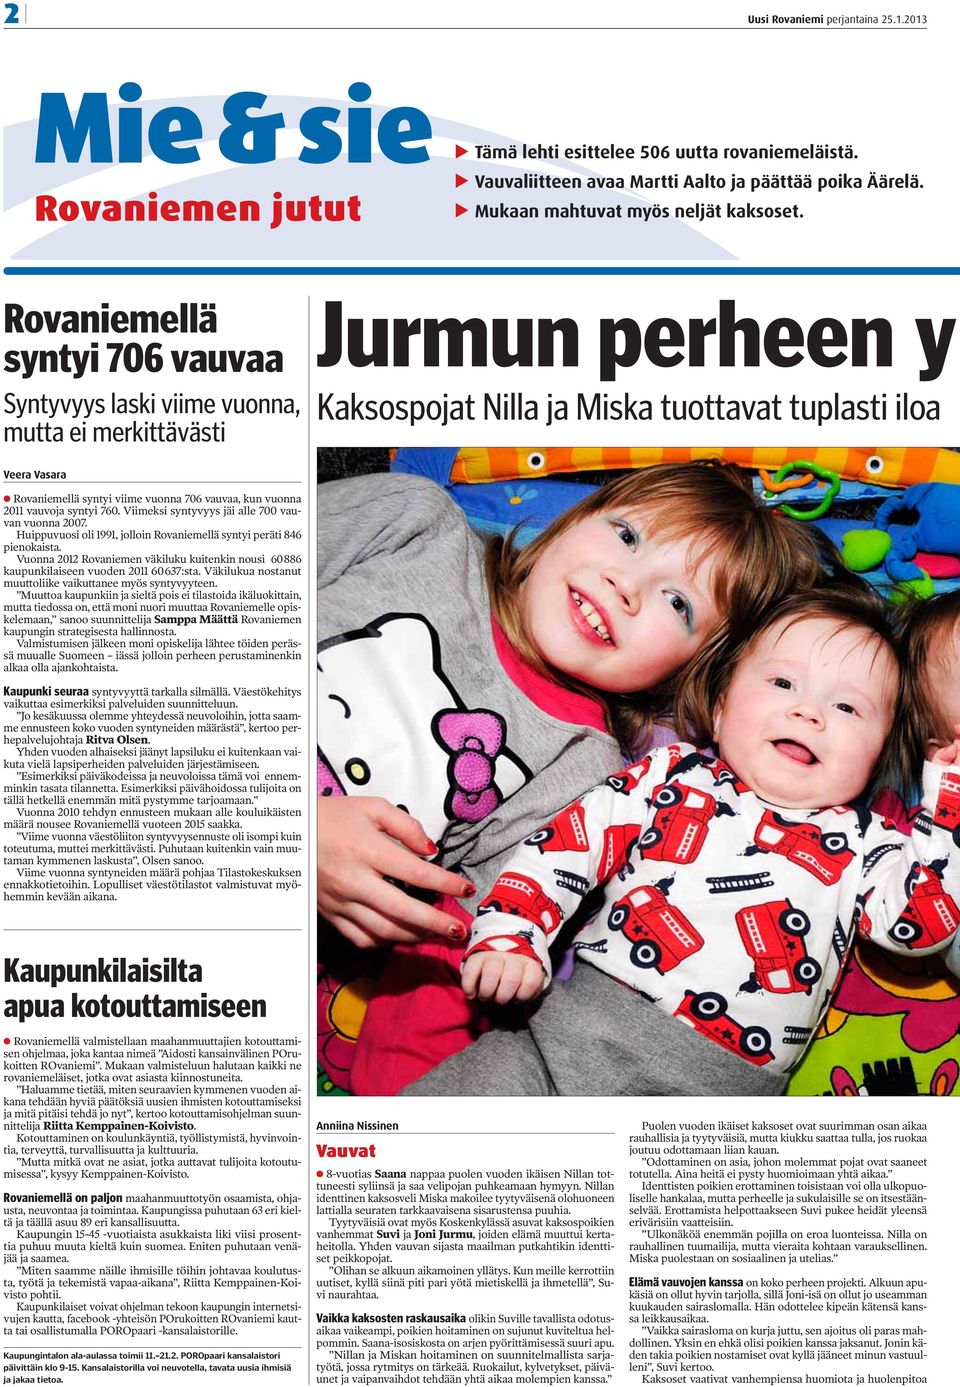 Rovaniemellä syntyi 706 vauvaa Syntyvyys laski viime vuonna, mutta ei merkittävästi Jurmun perheen y Kaksospojat Nilla ja Miska tuottavat tuplasti iloa Veera Vasara Rovaniemellä syntyi viime vuonna